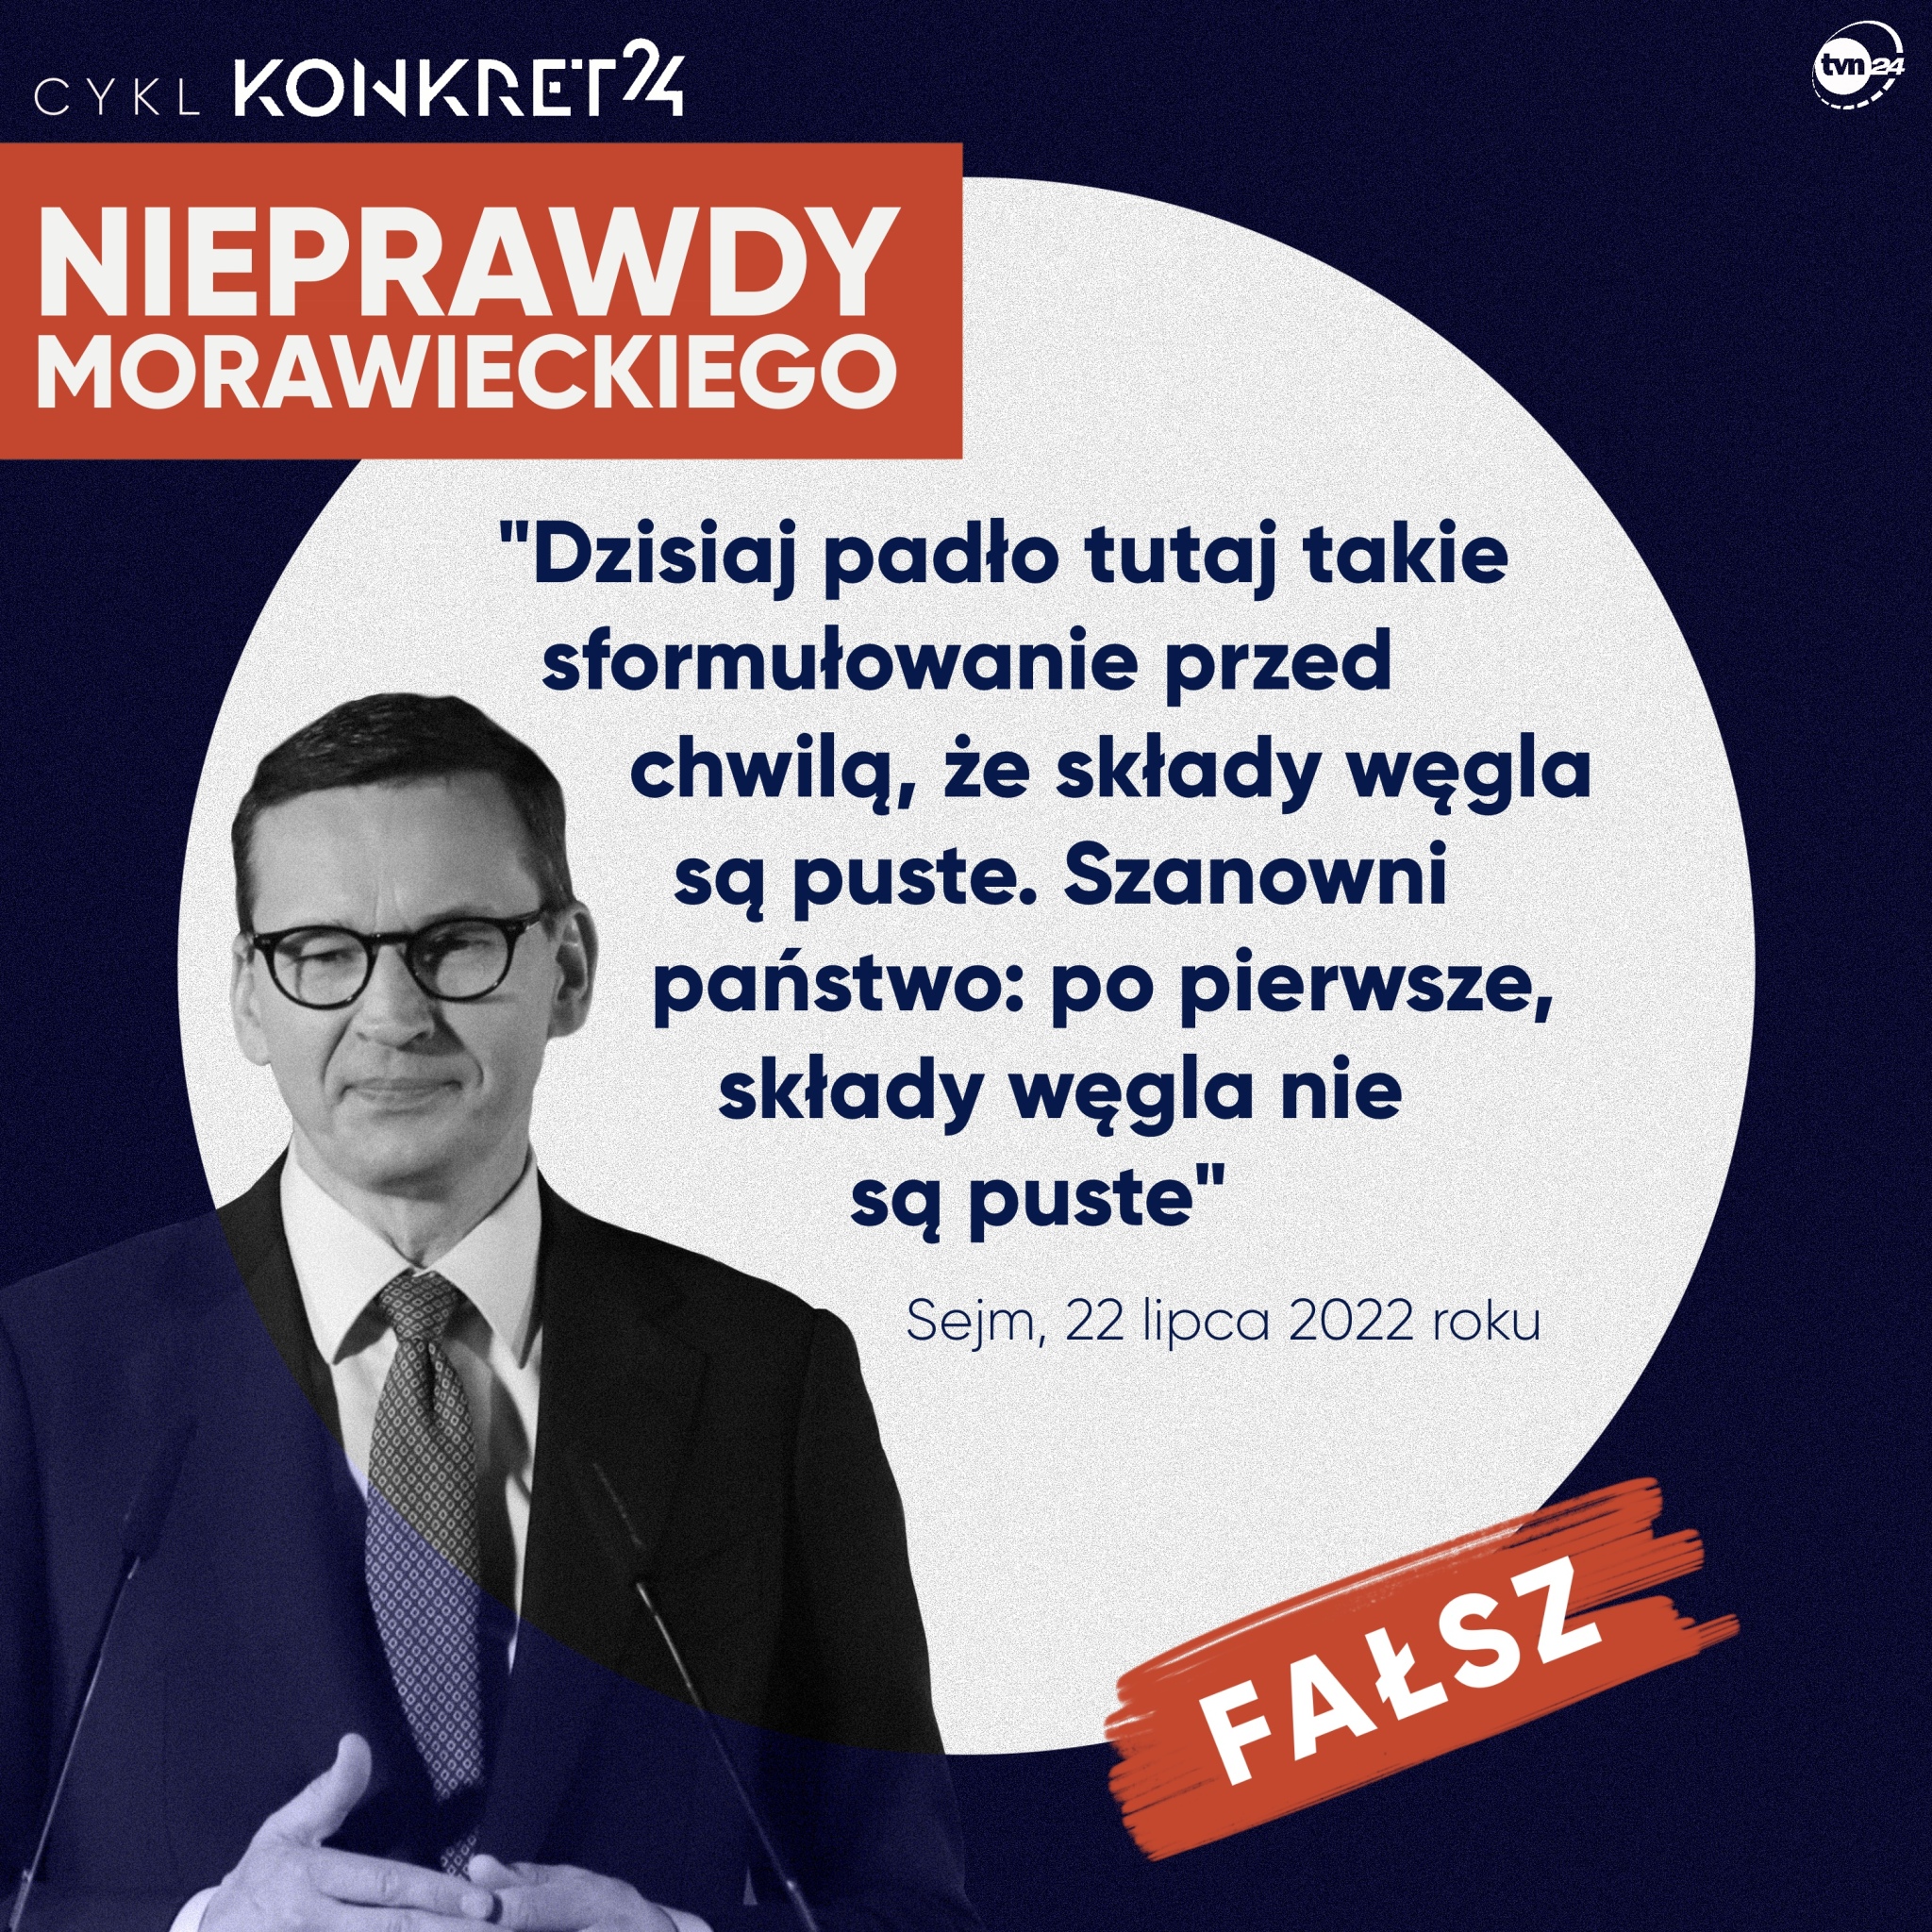 Mateusz Morawiecki o składach węgla. Nieprawdy premiera Morawieckiego (część V)